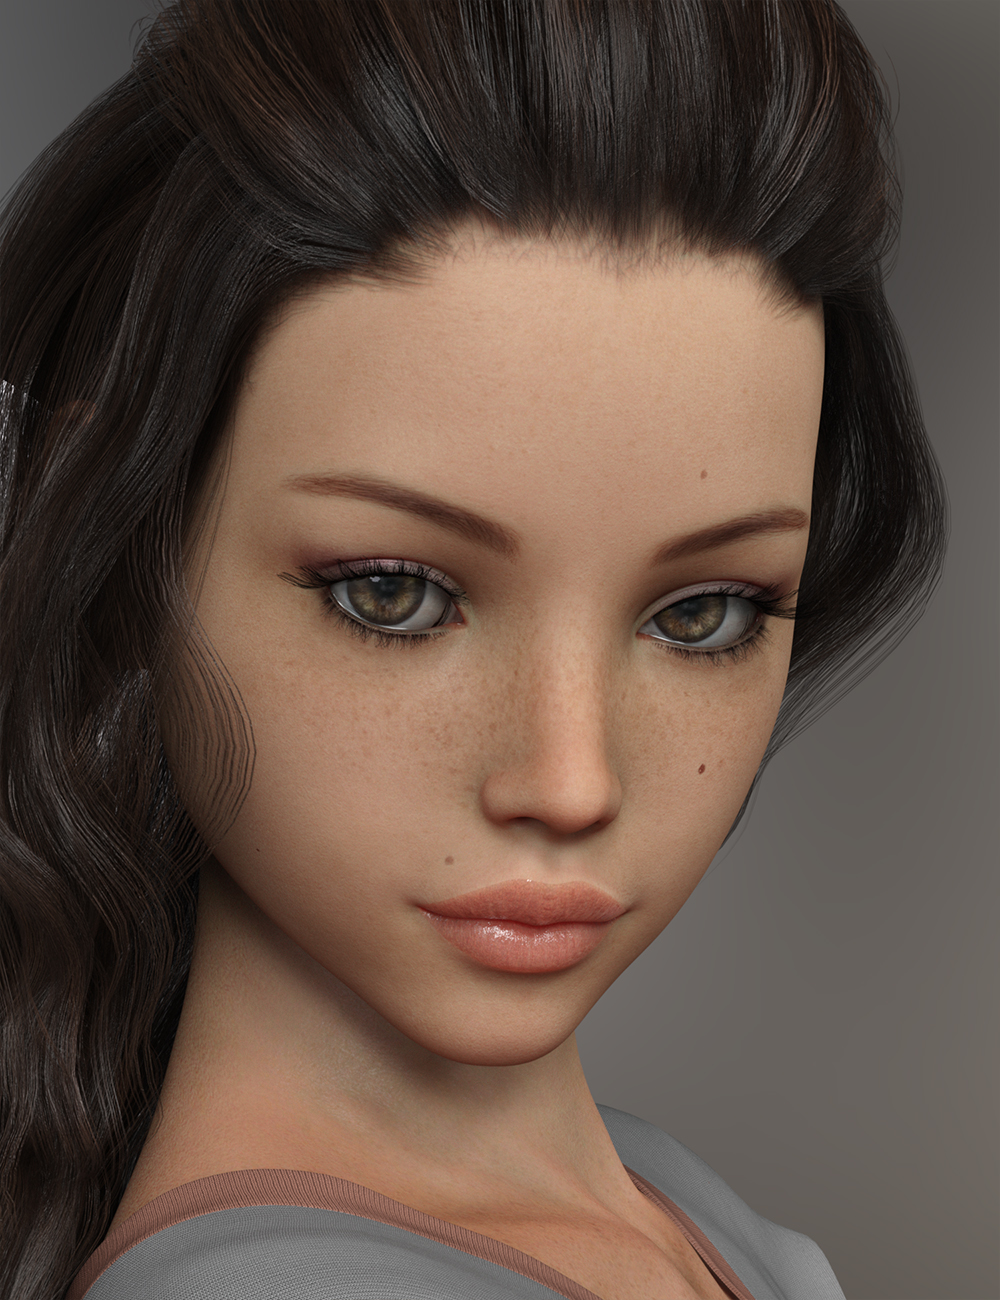 FWSA Willa HD for Teen Josie 8 by: Fred Winkler ArtSabby, 3D Models by Daz 3D